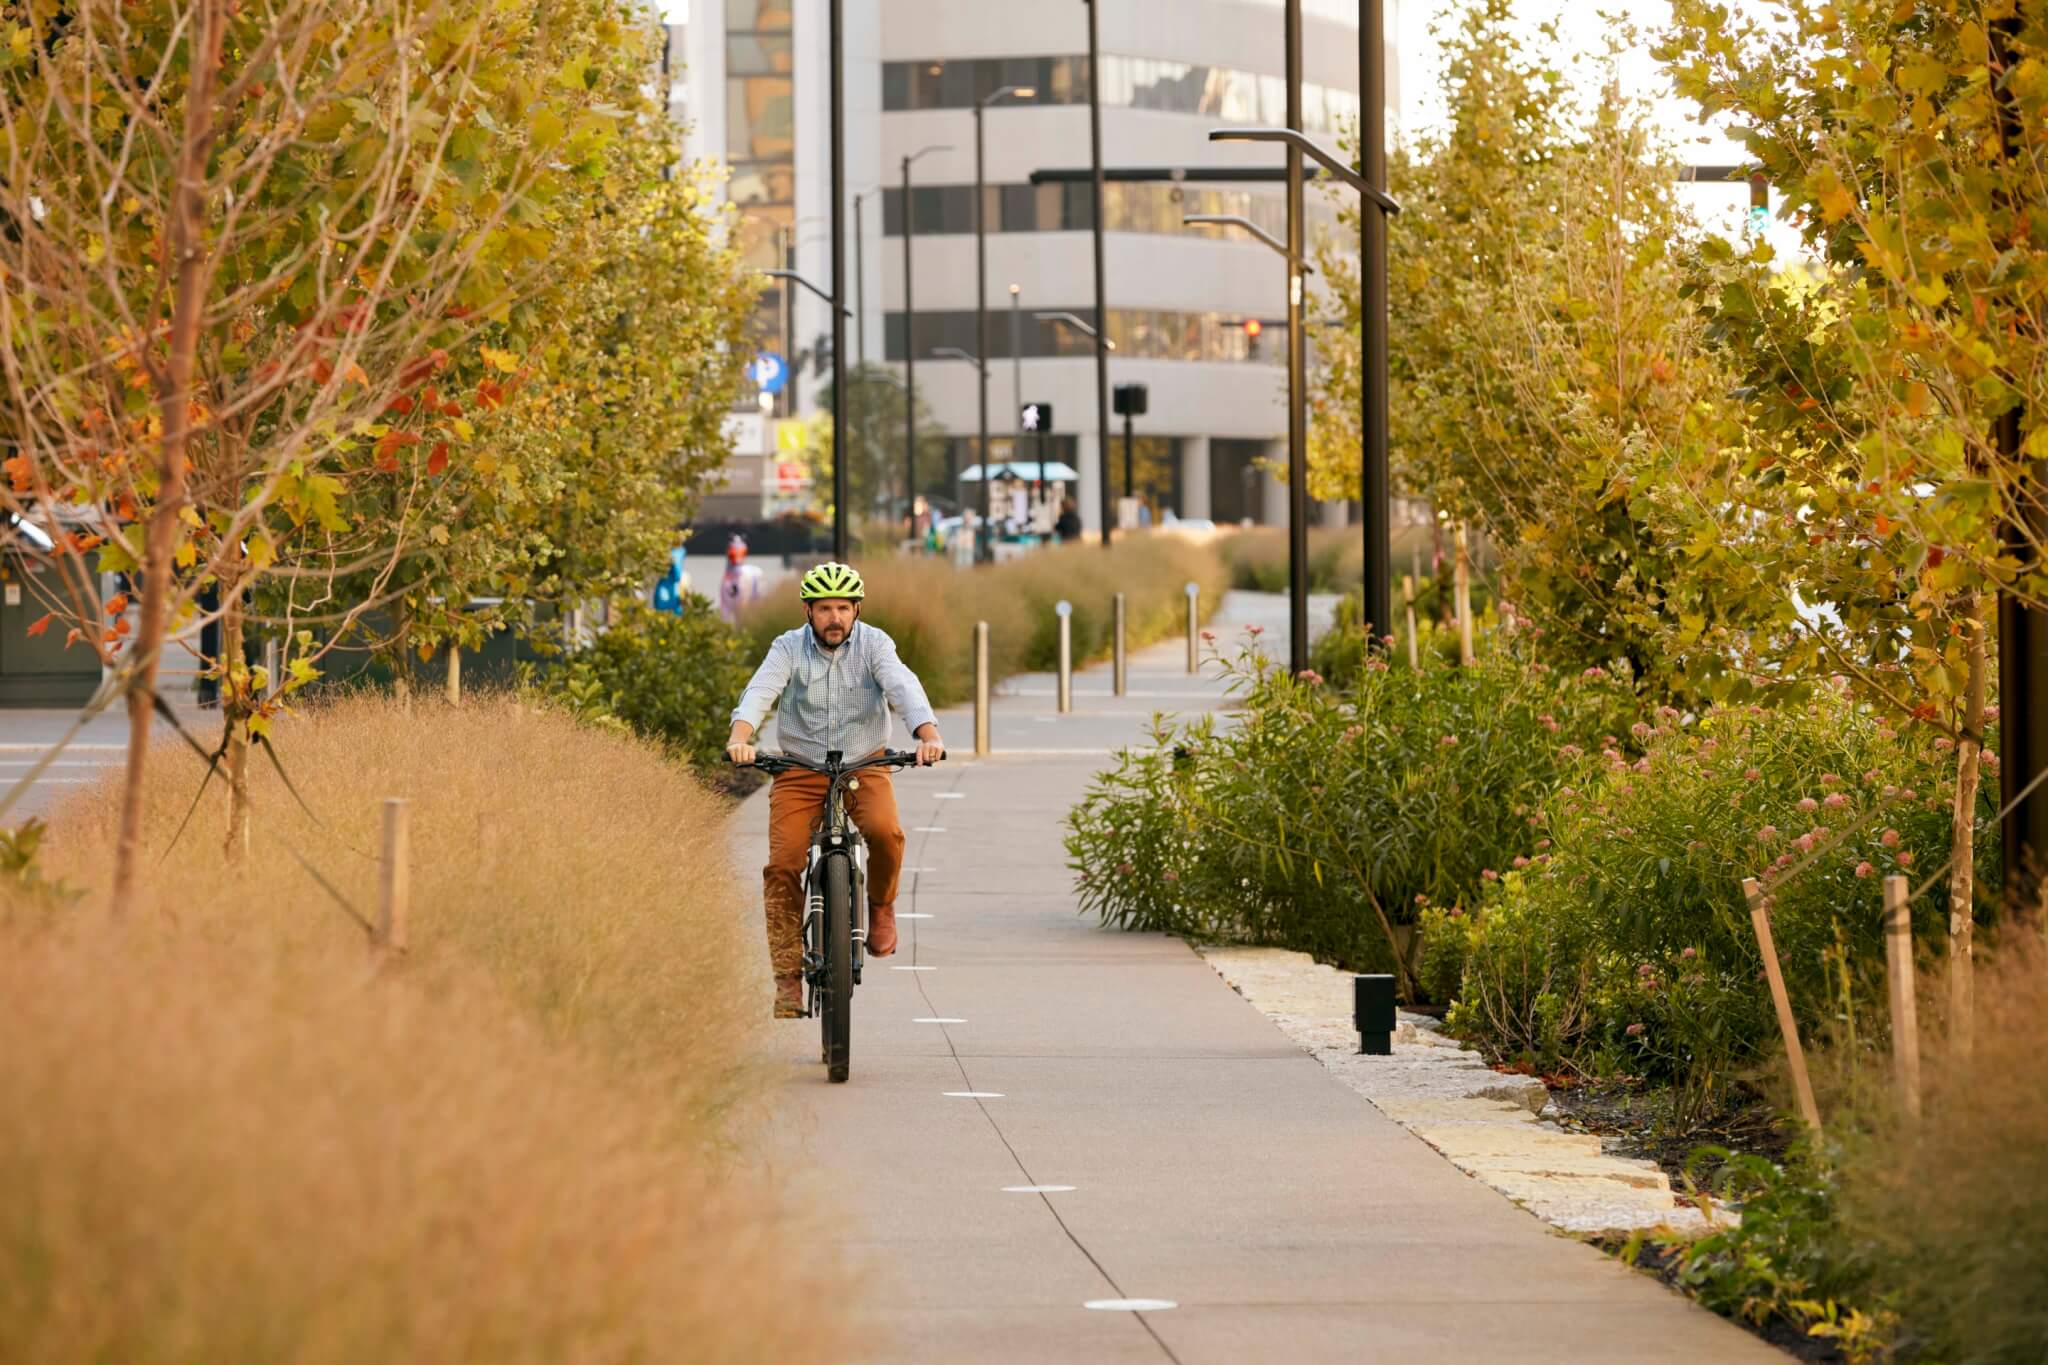 دوچرخه سواری در امتداد مسیری چند منظوره در منطقه ای در مرکز شهر حرکت می کند